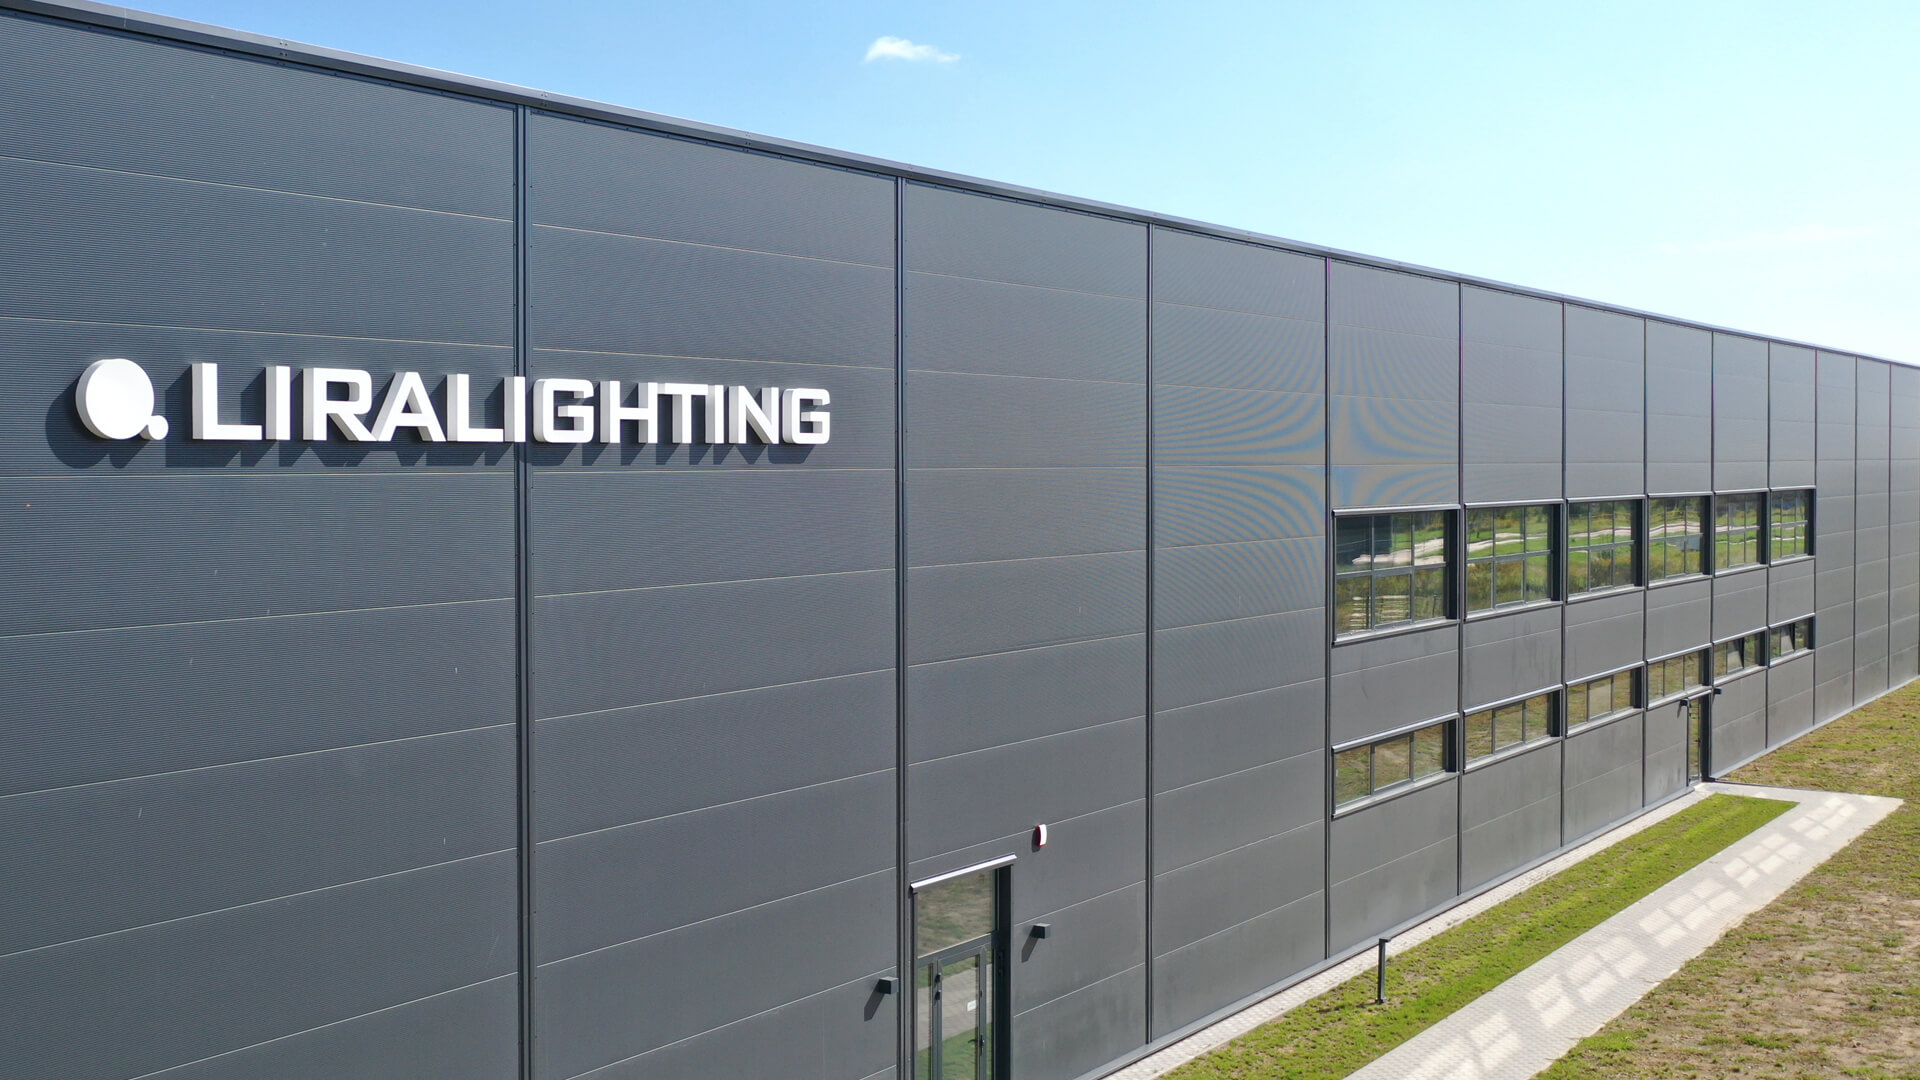 Beleuchtete Buchstaben Liralighting - 3D LED-Leuchtbuchstaben auf Industriehalle in weiß.